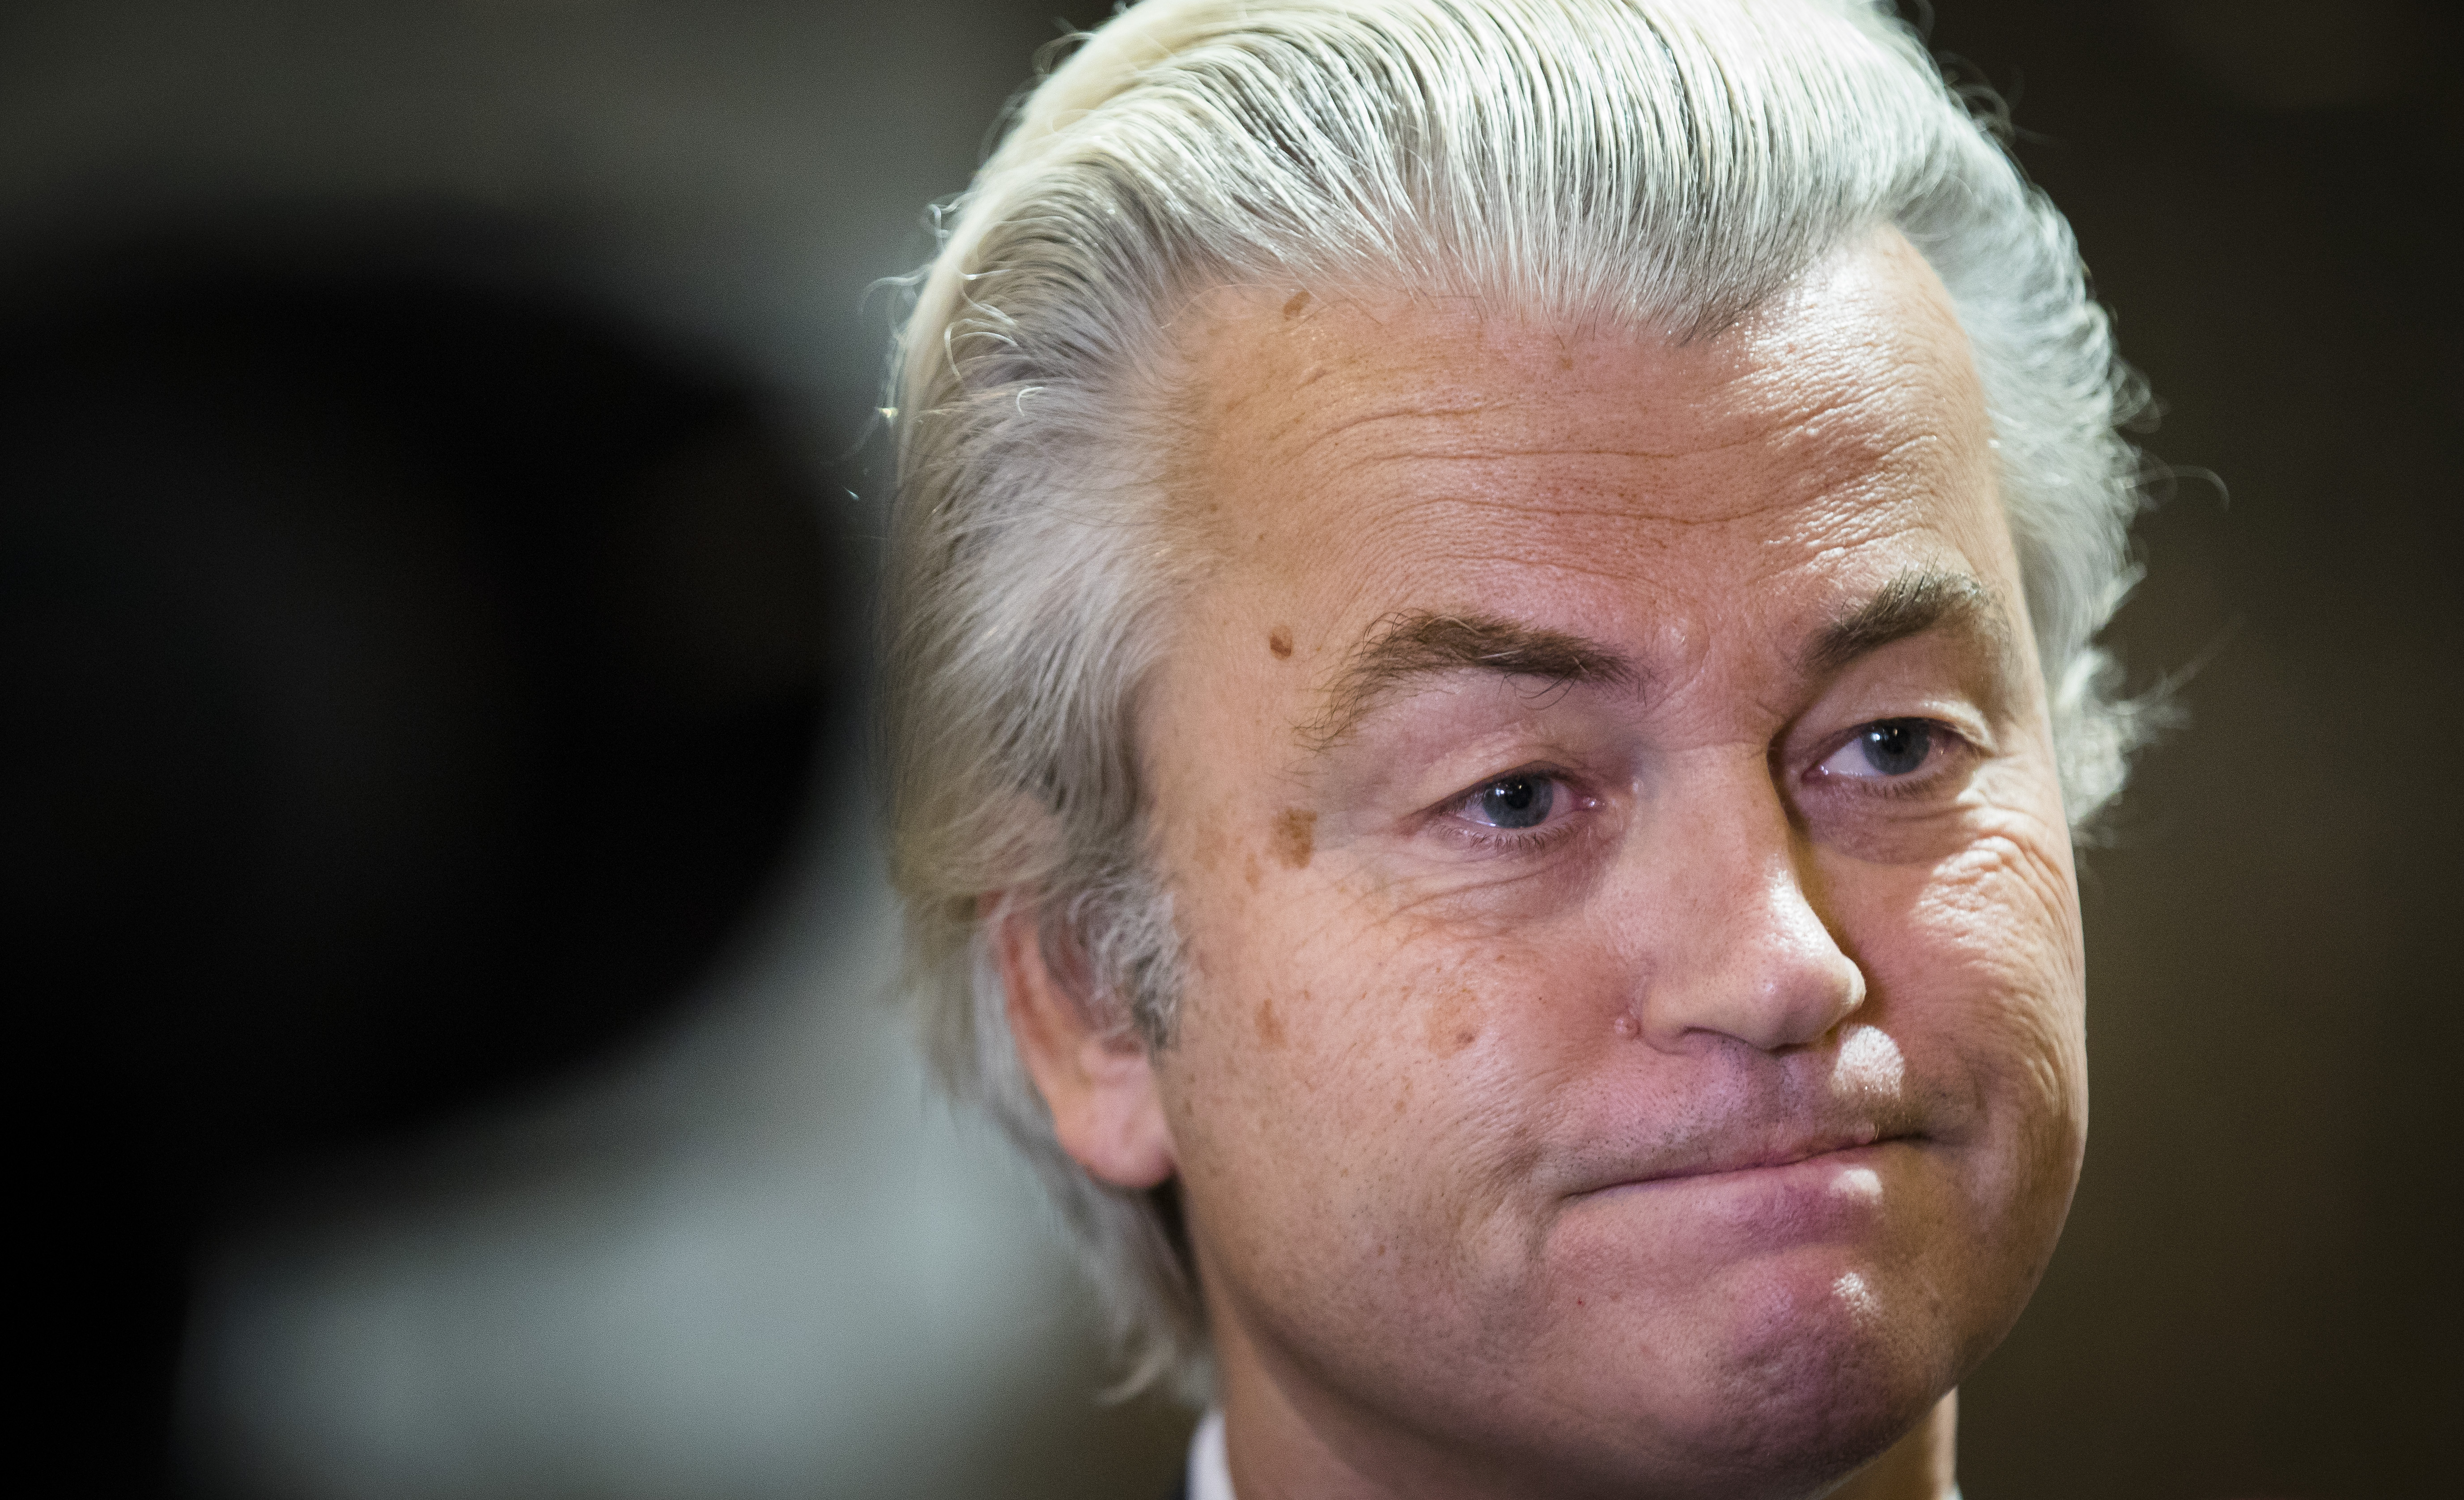 2016-12-06 16:04:24 DEN HAAG - PVV-fractievoorzitter Geert Wilders tijdens het wekelijkse vragenuurtje in de Tweede Kamer. ANP BART MAAT